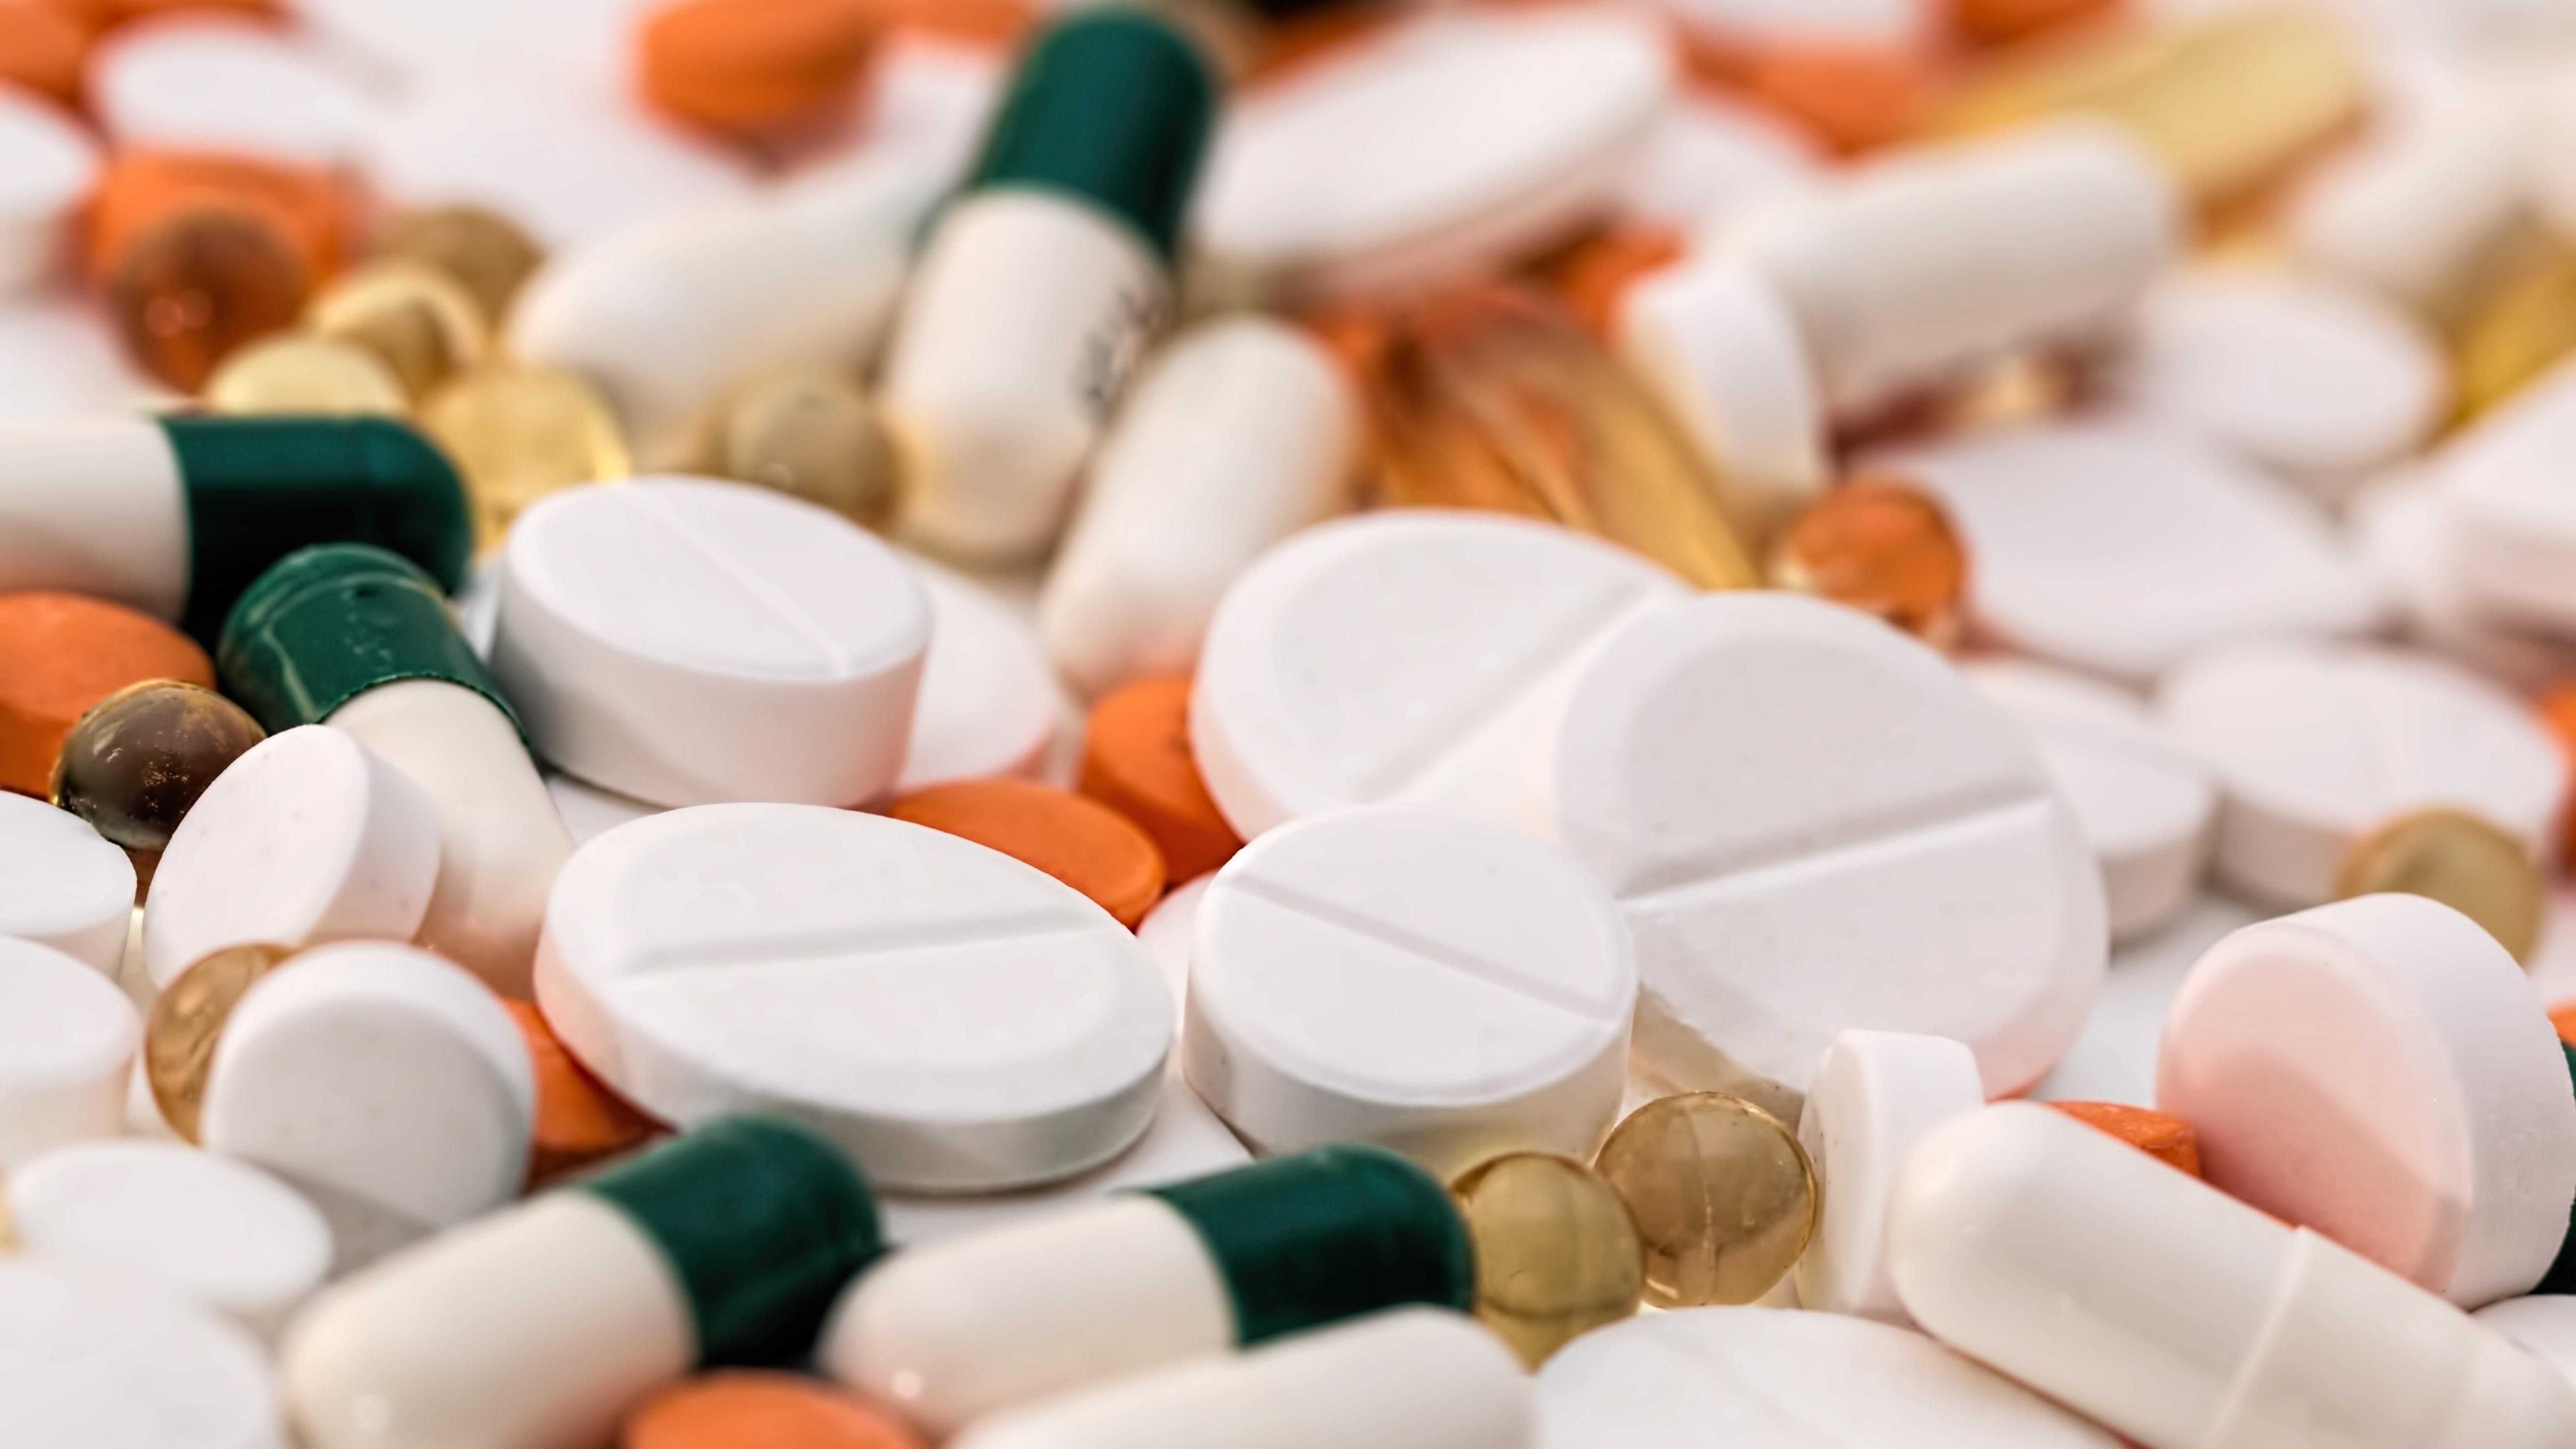 В Украине запретили популярный мочегонный препарат